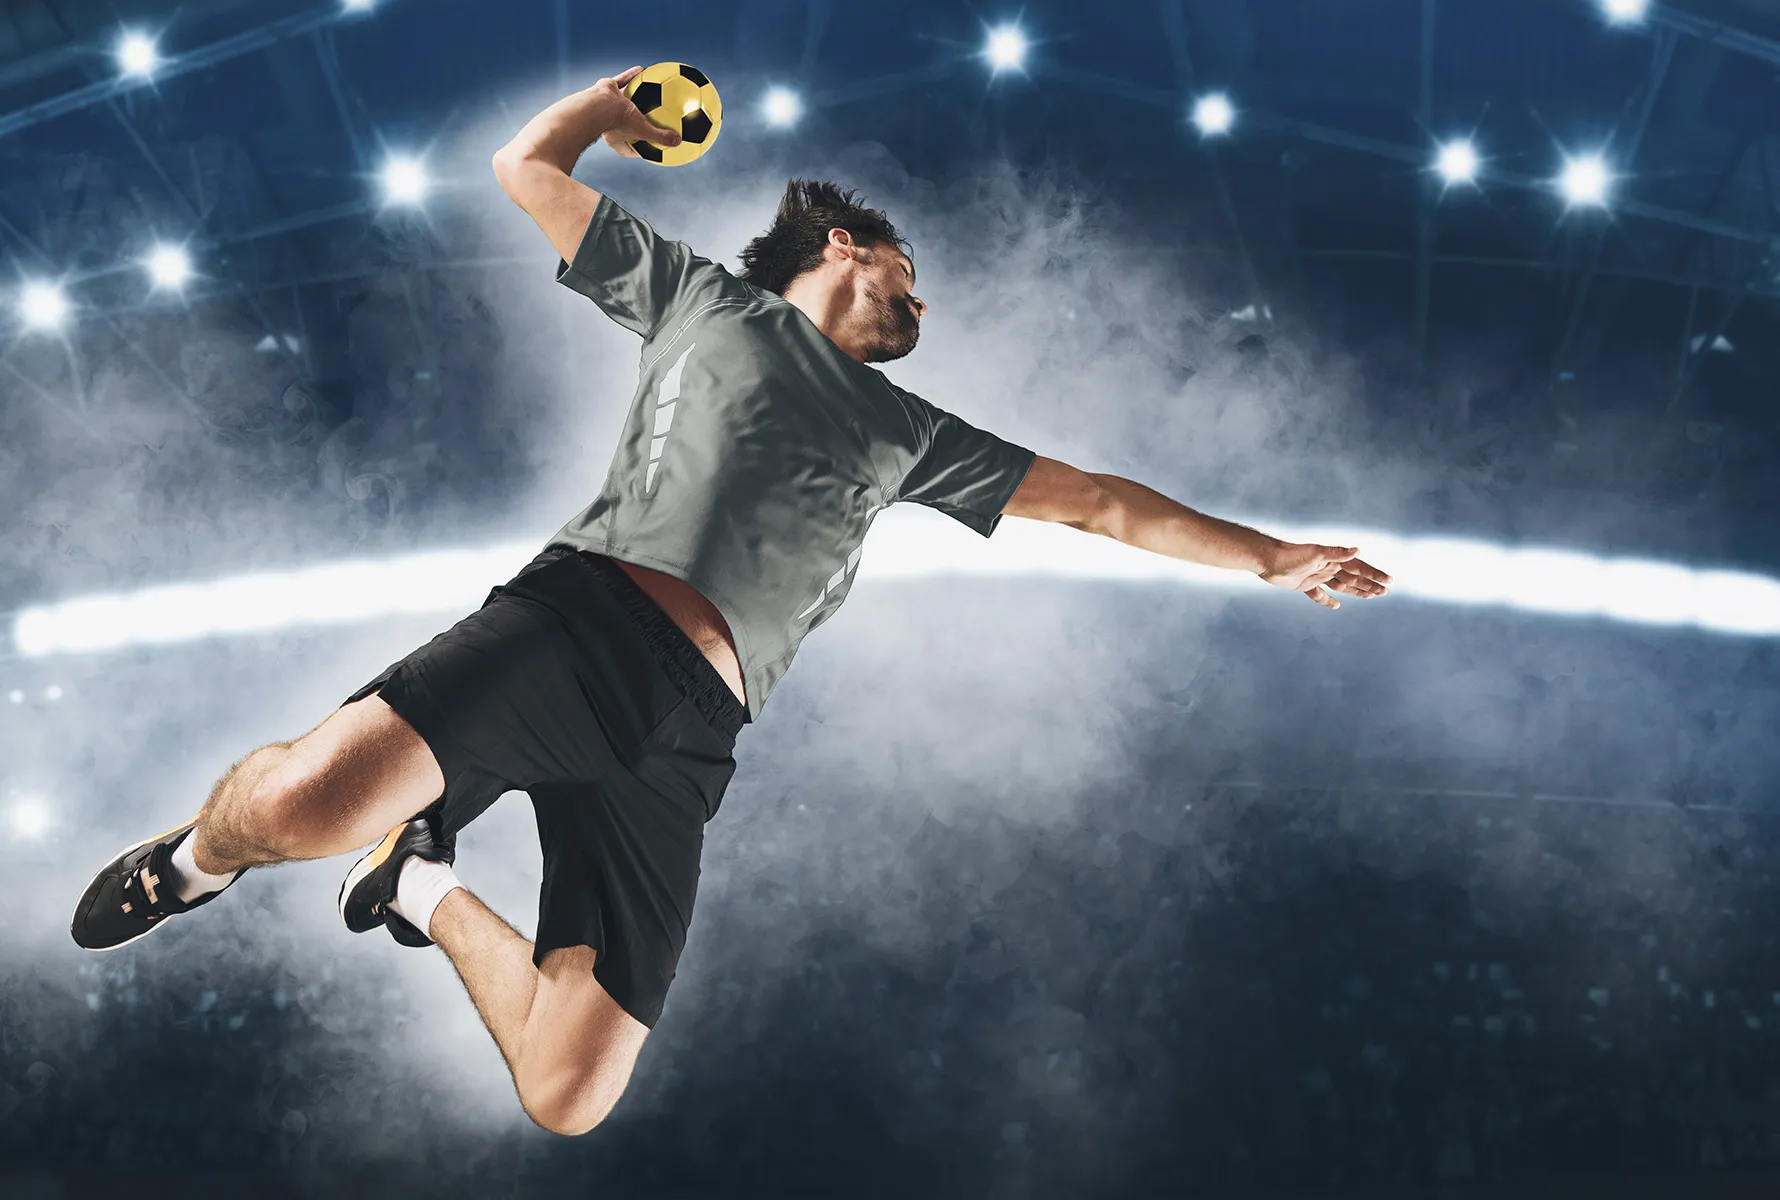 ハンドボール 上達するためのコツは７つ 簡単練習法もご紹介 スポスルマガジン 様々なスポーツ情報を配信